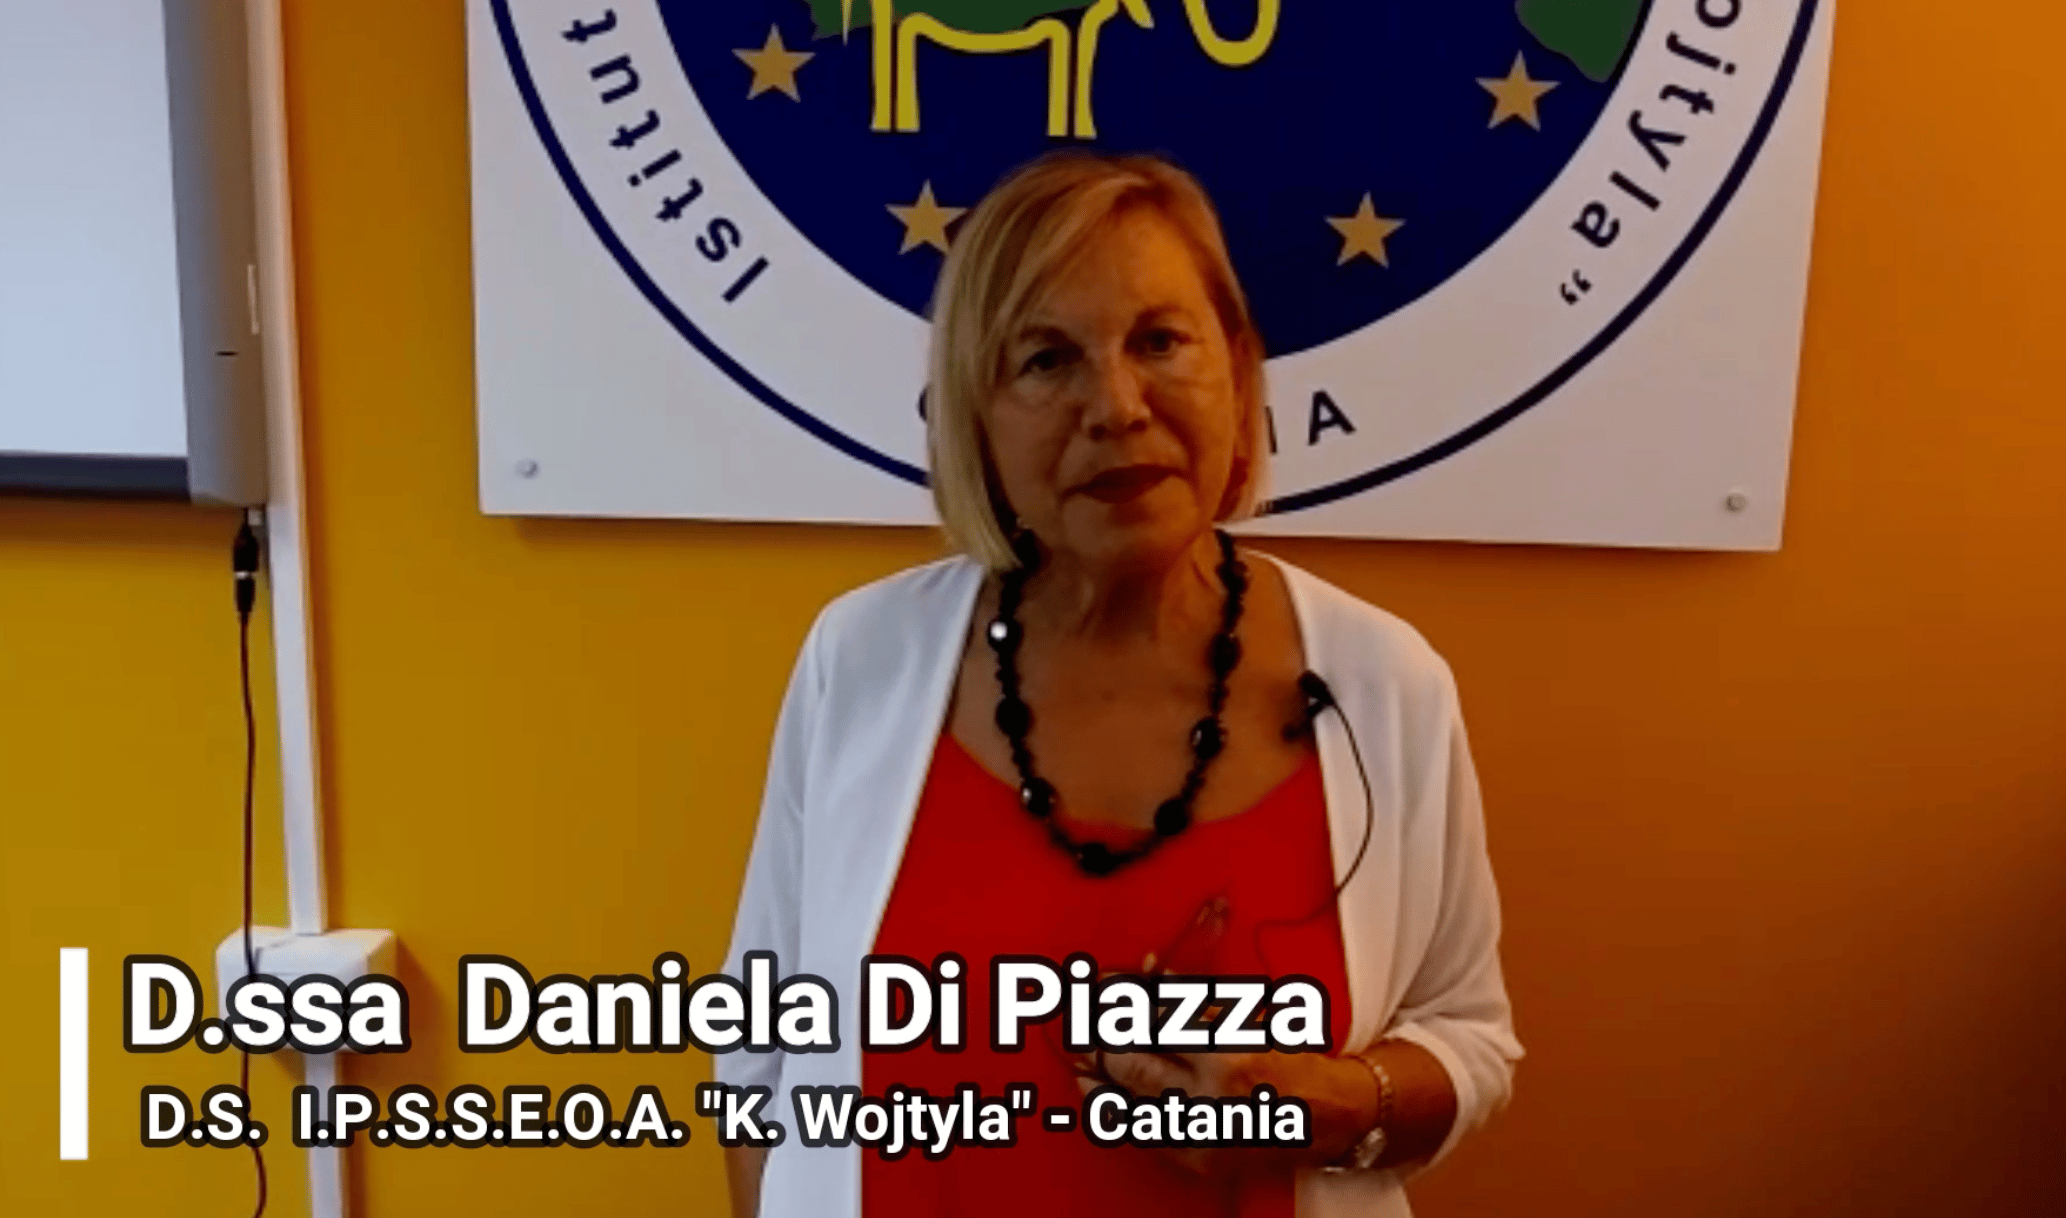 Si riparte all’IPSSEOA “Karol Wojtyla” di Catania con “tante cose che bollono in pentola” – IL VIDEOMESSAGGIO DELLA DIRIGENTE DI PIAZZA